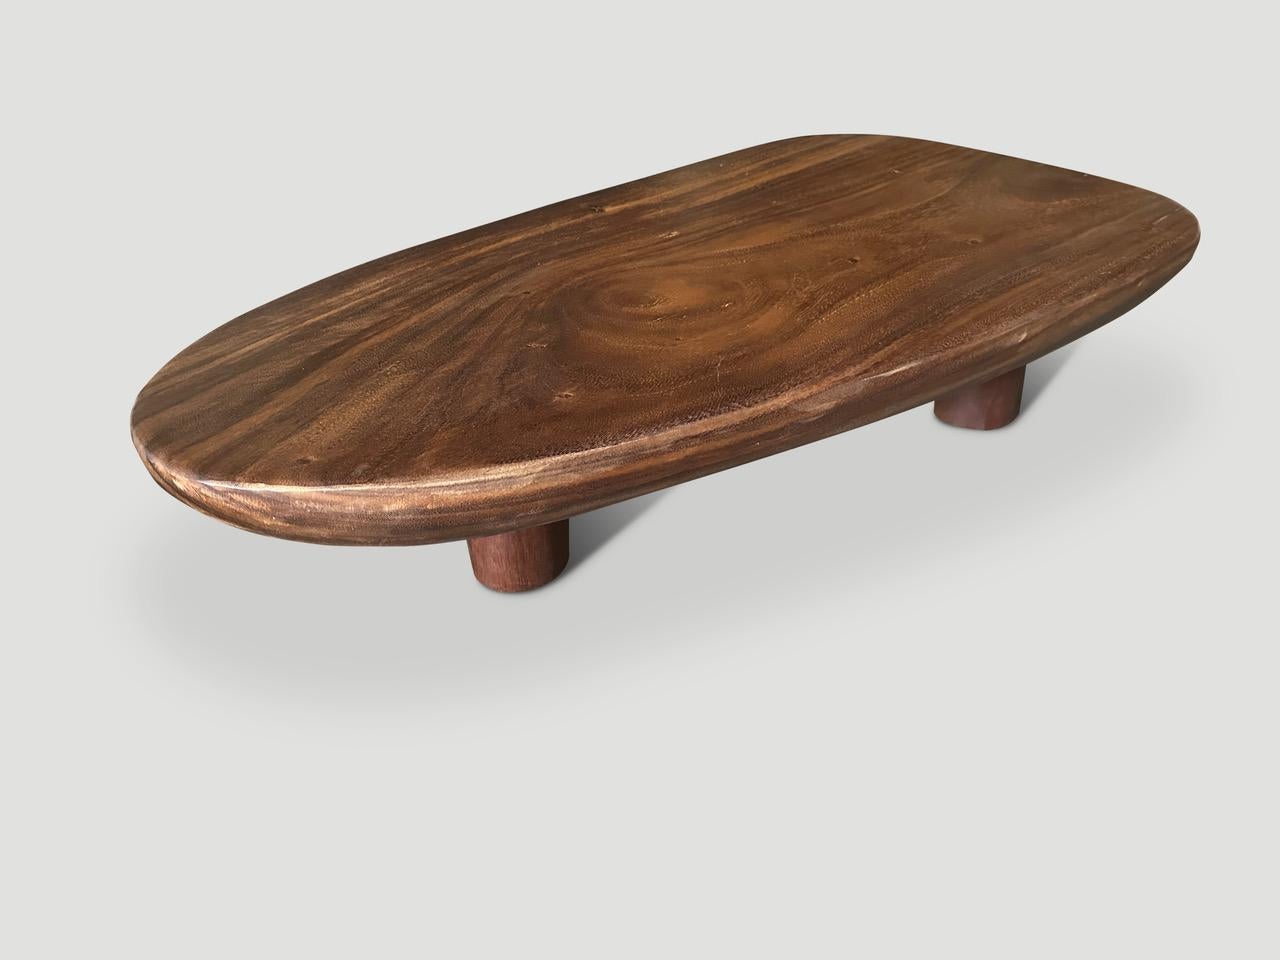 Cette table basse minimaliste est fabriquée à partir d'une magnifique plaque de bois de suar d'une seule épaisseur, sculptée à la main. Nous avons ajouté quatre pieds cylindriques permettant à la partie supérieure de flotter. Finition avec une huile